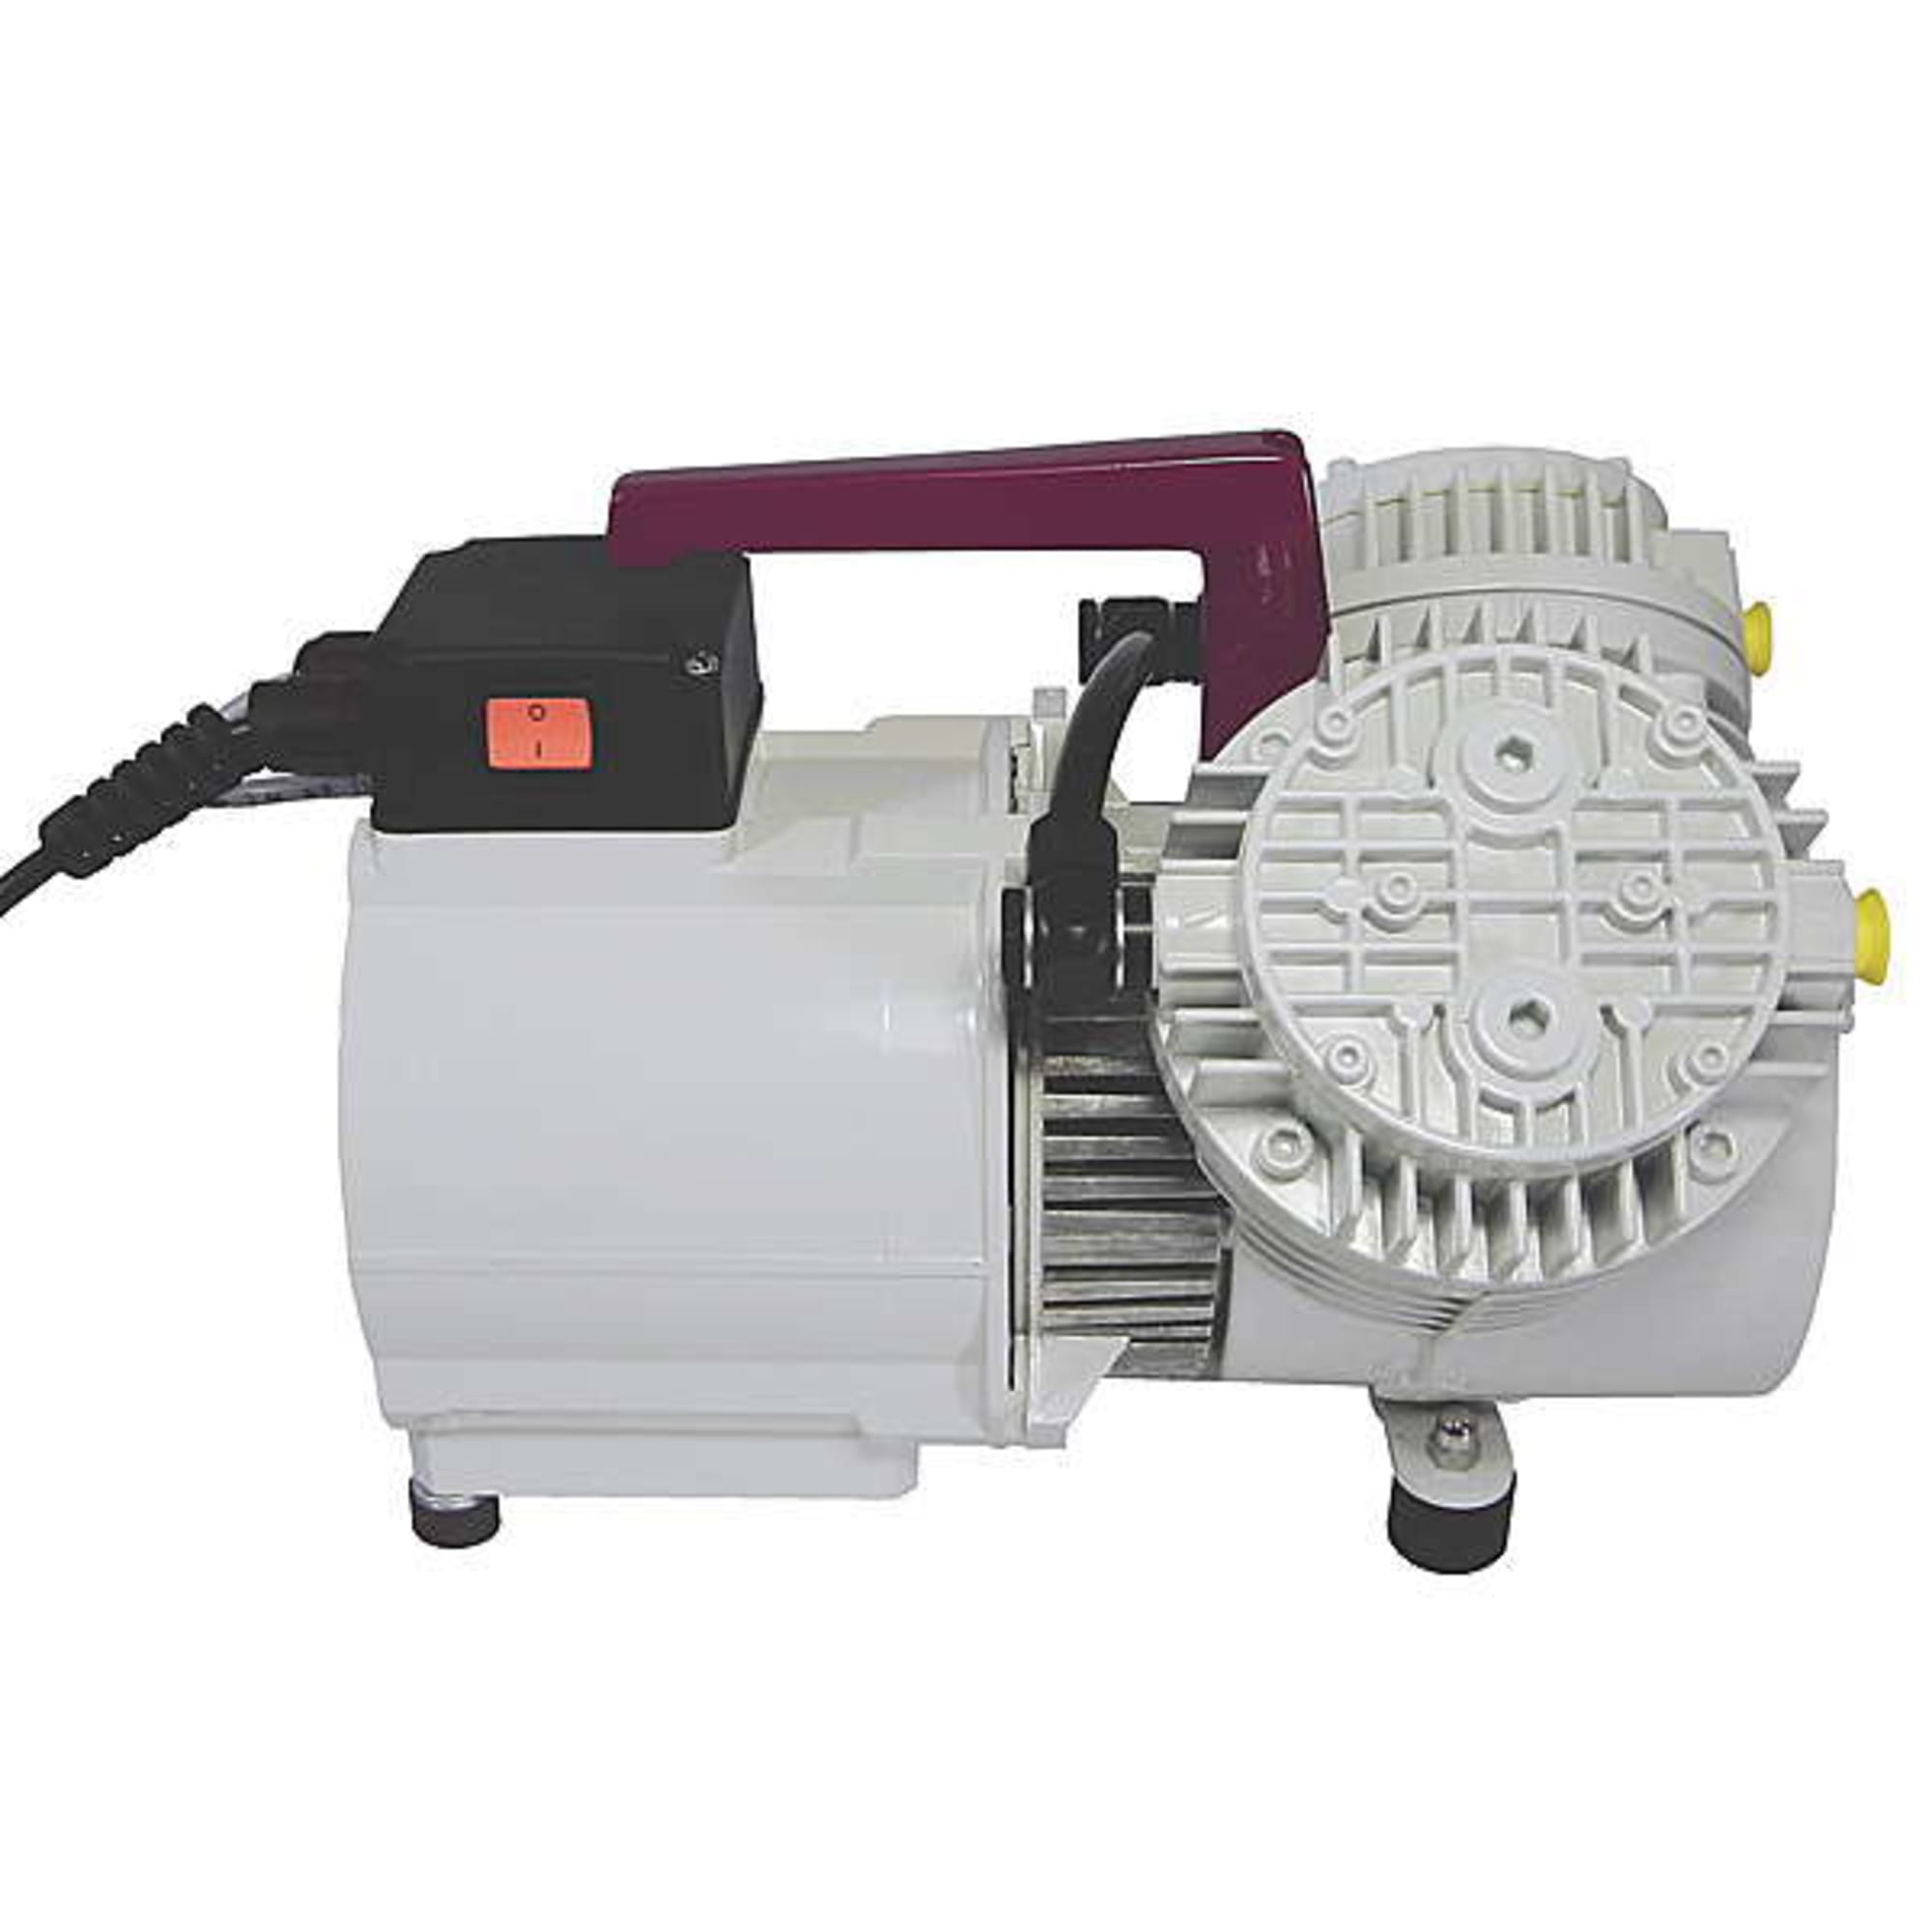 Vacuum pump P3-SPEZIAL (for RI - Resin Infusion), image 3